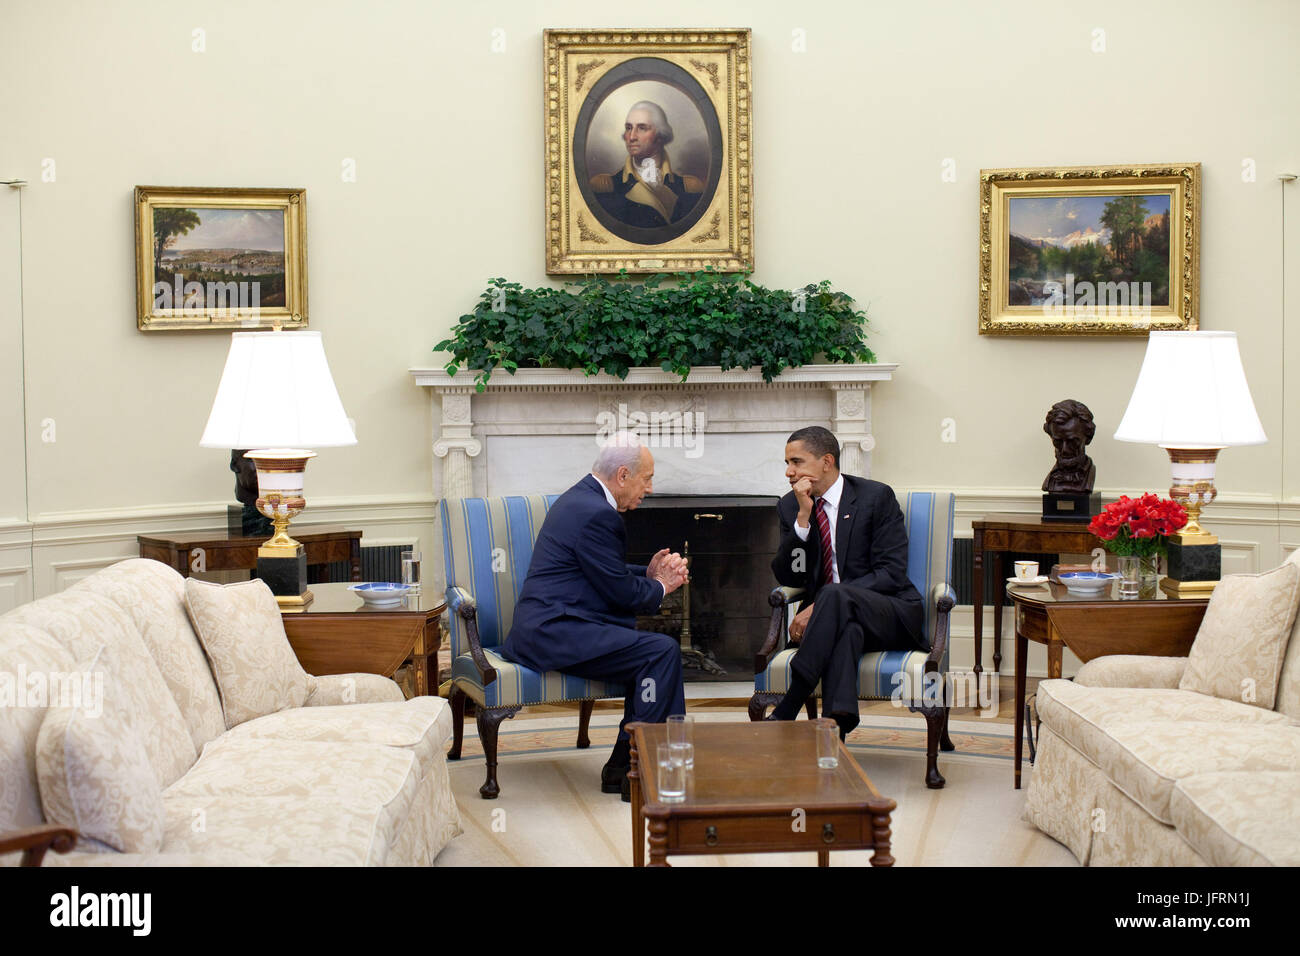 Le président Barack Obama rencontre avec le président israélien Shimon Peres dans le bureau ovale Le mardi, 5 mai 2009. Photo Officiel de la Maison Blanche par Pete Souza Banque D'Images